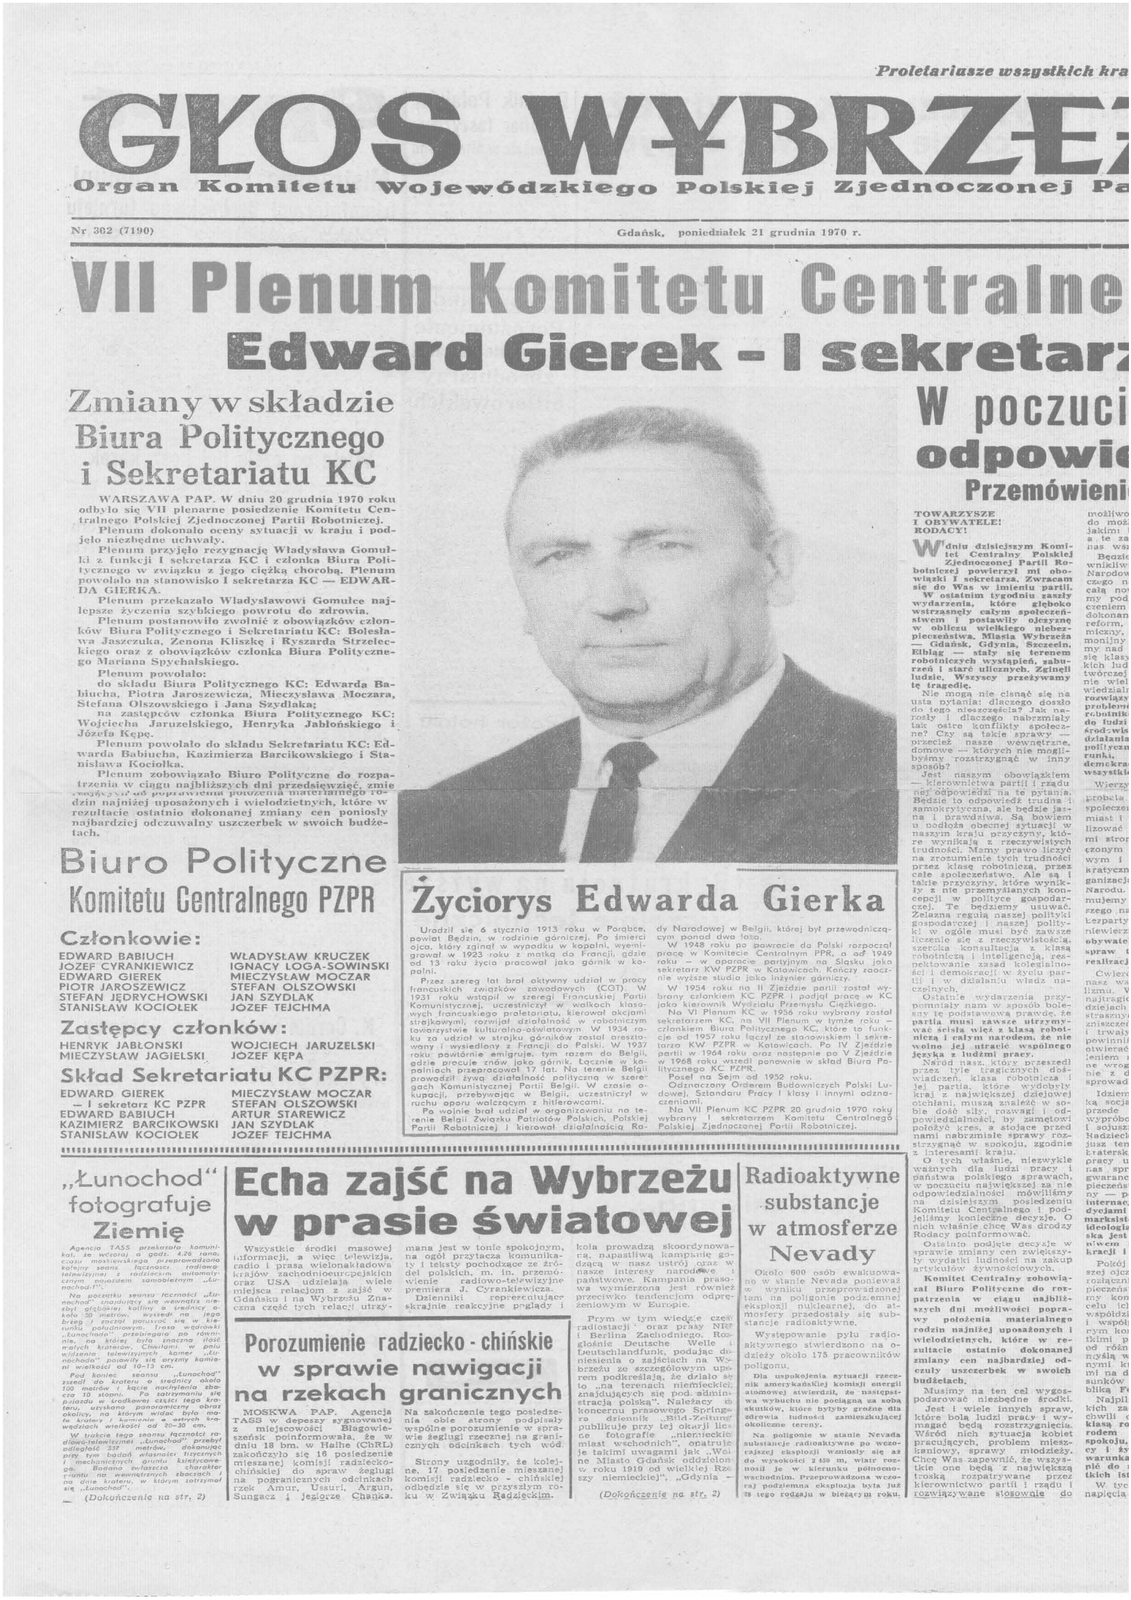 Zdjęcie przedstawia stronę tytułową Głosu Wybrzeża. Główny tytuł to Siódme Plenum Komitetu Centralnego Edward Gierek pierwszym sekretarzem. Poniżej znajduje się zdjęcie Edwarda Gierka.